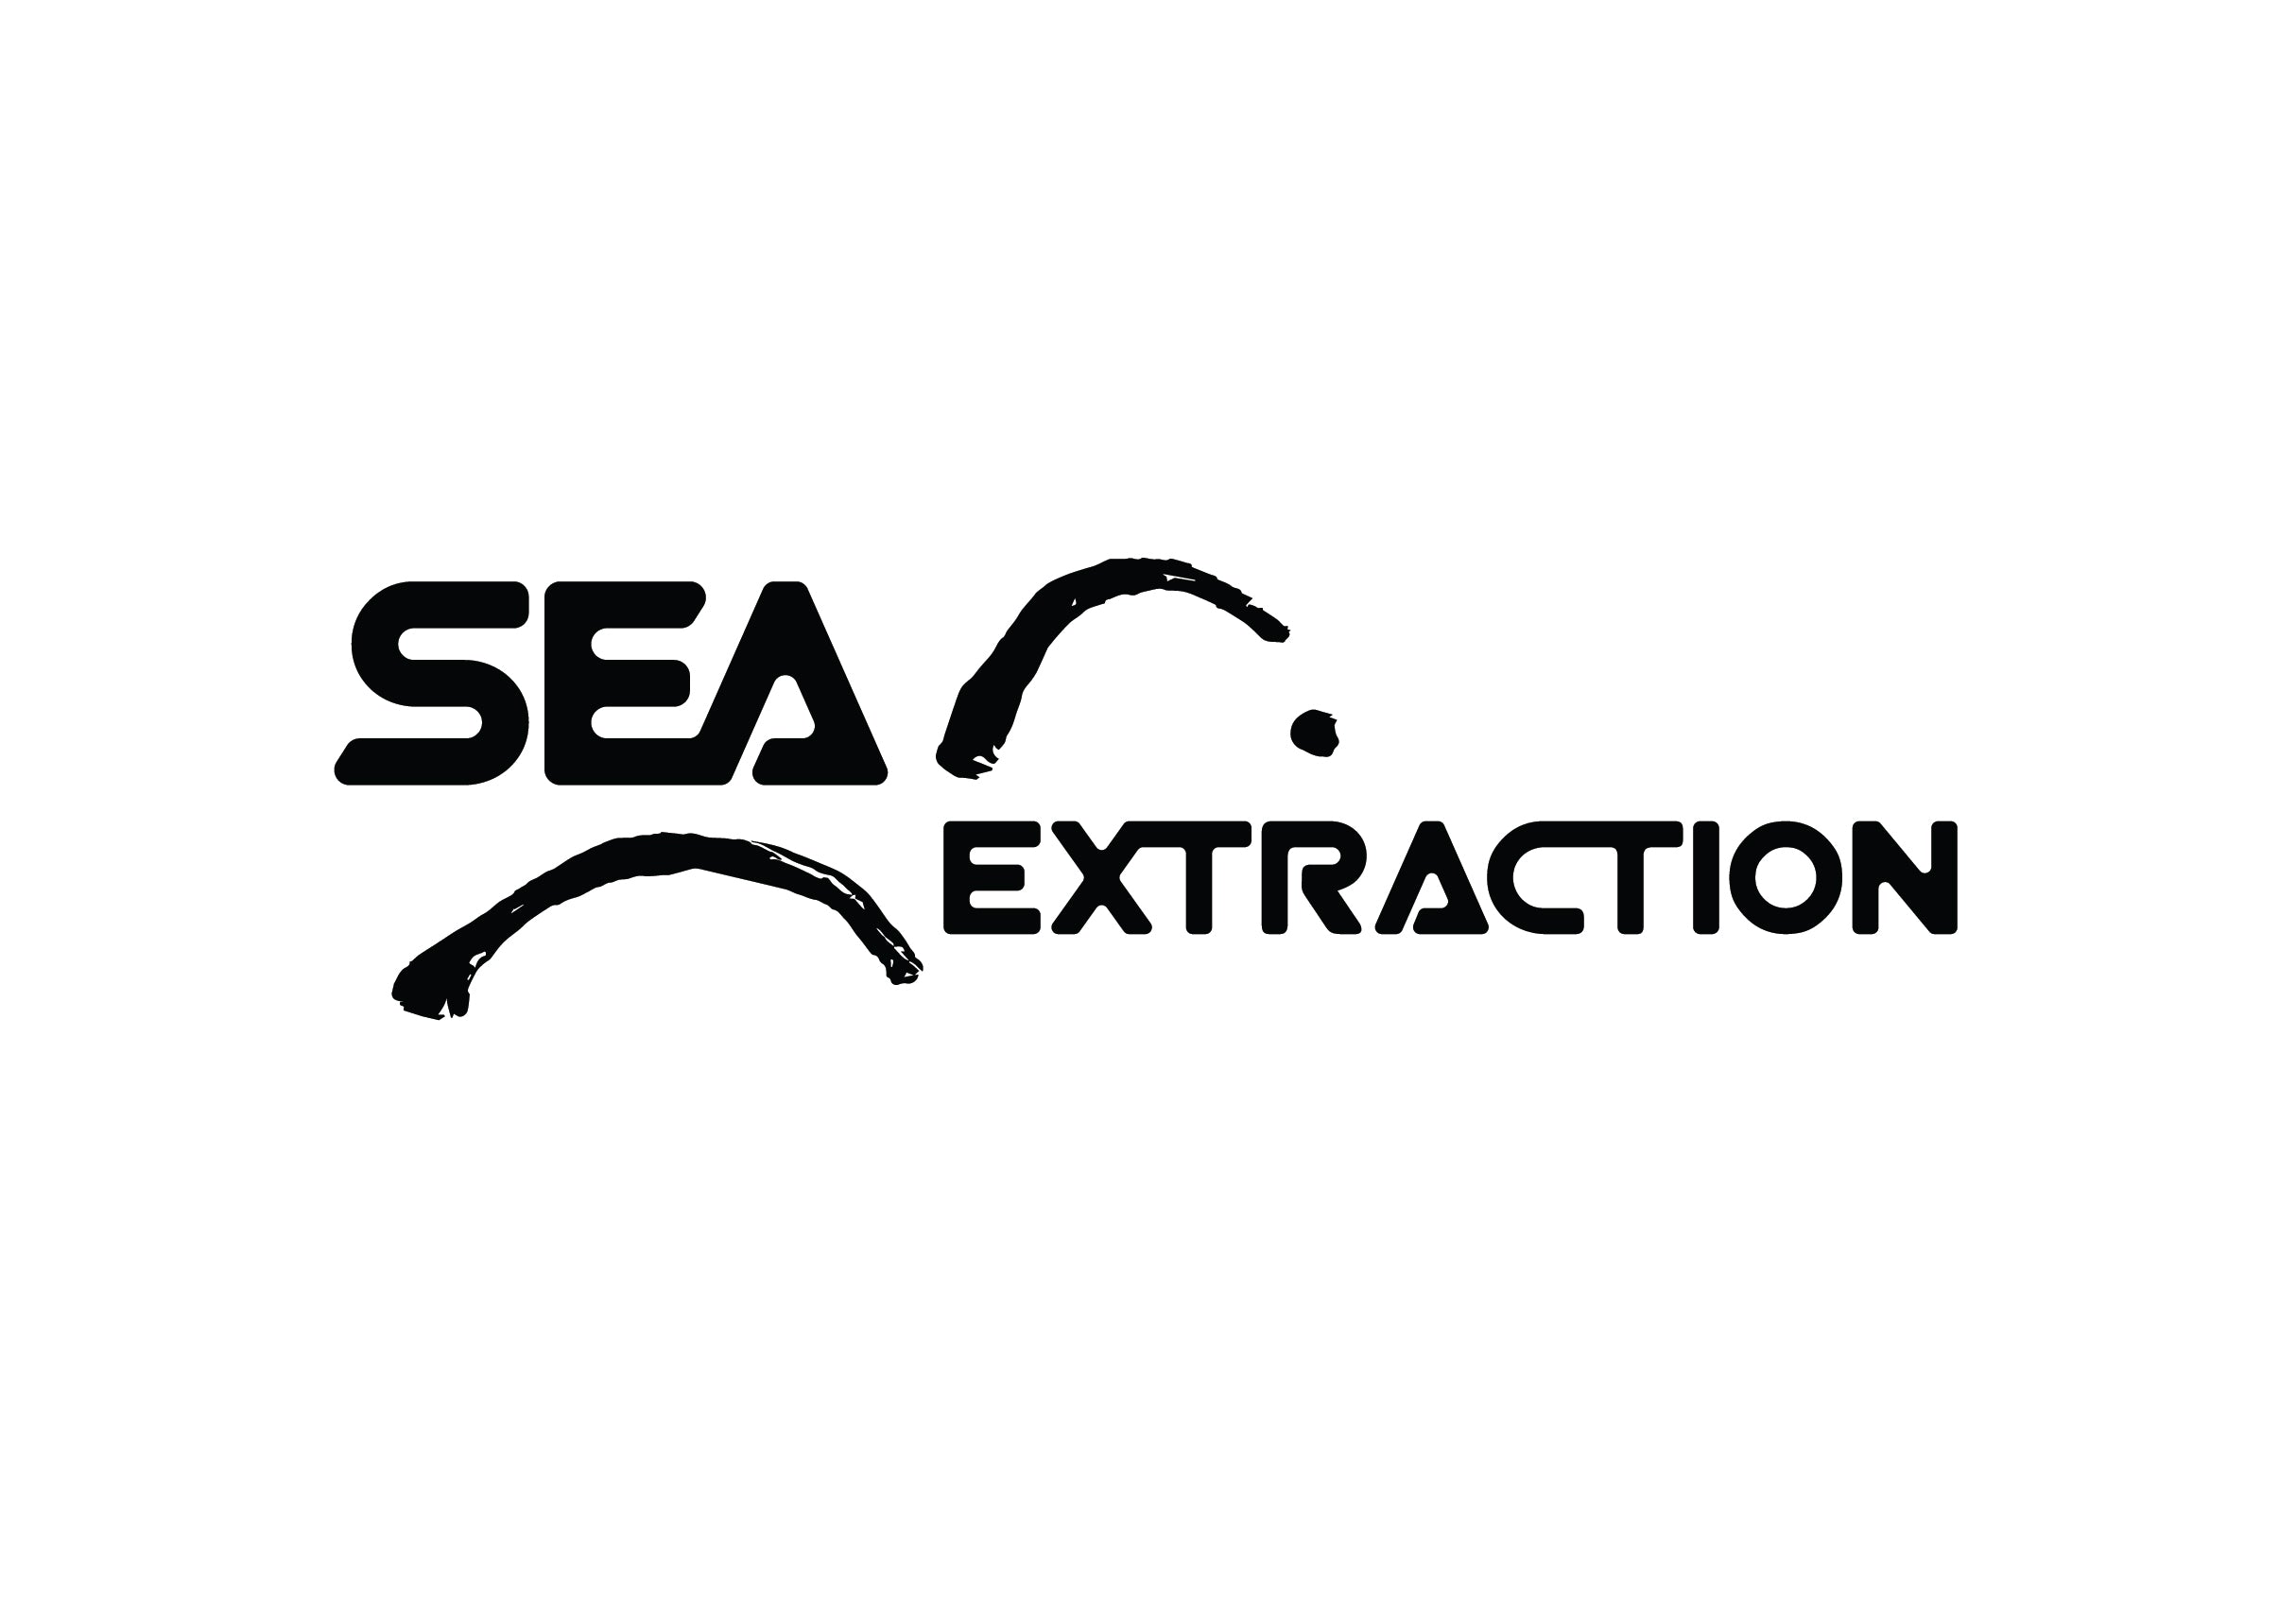 Seaextraction